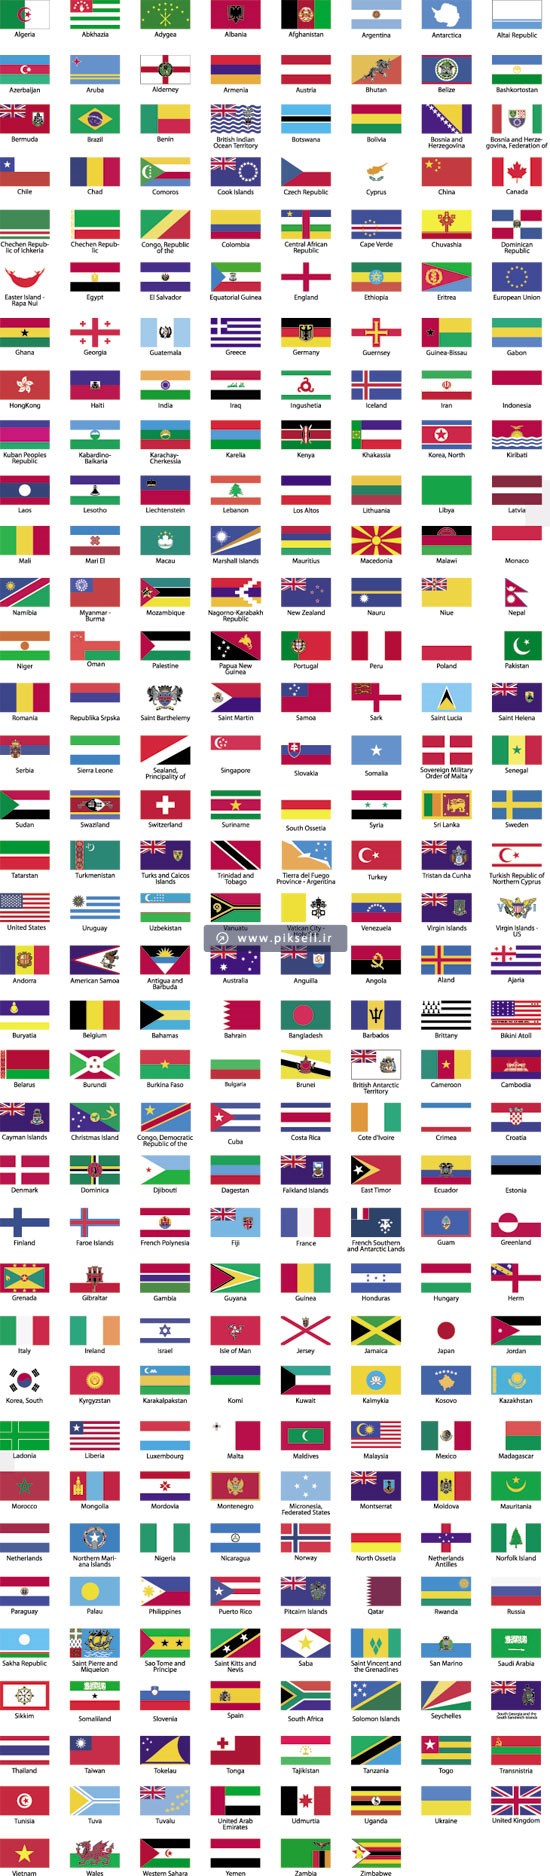 تصاویر پرچم کشور های مختلف